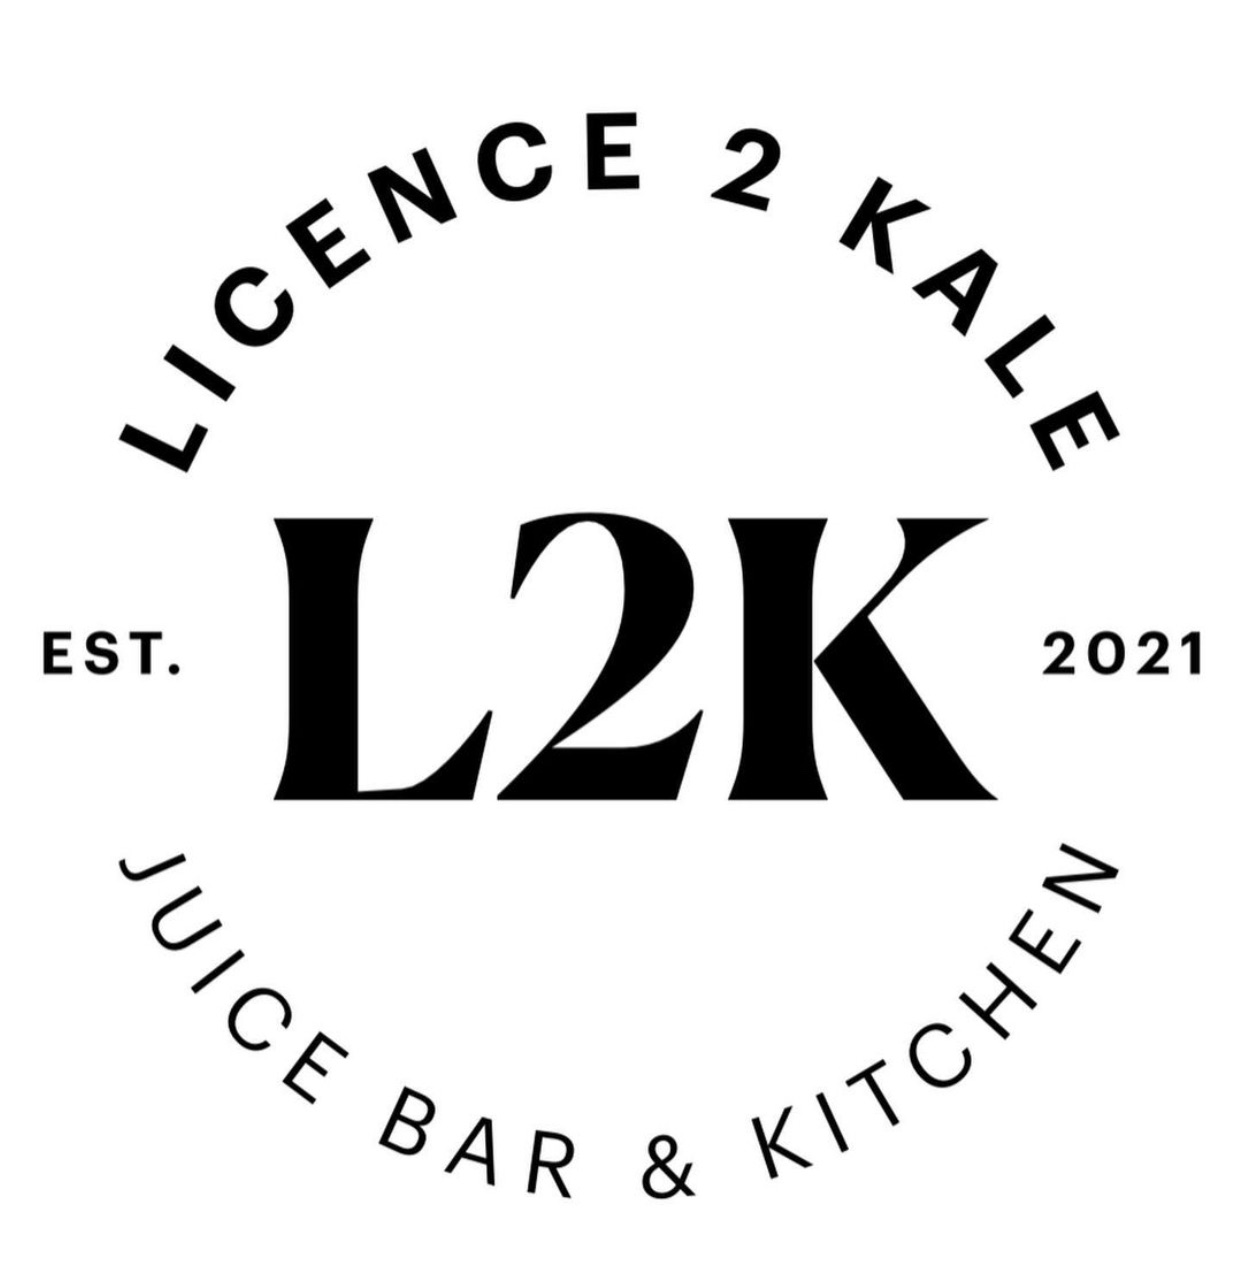 Licence 2 Kale